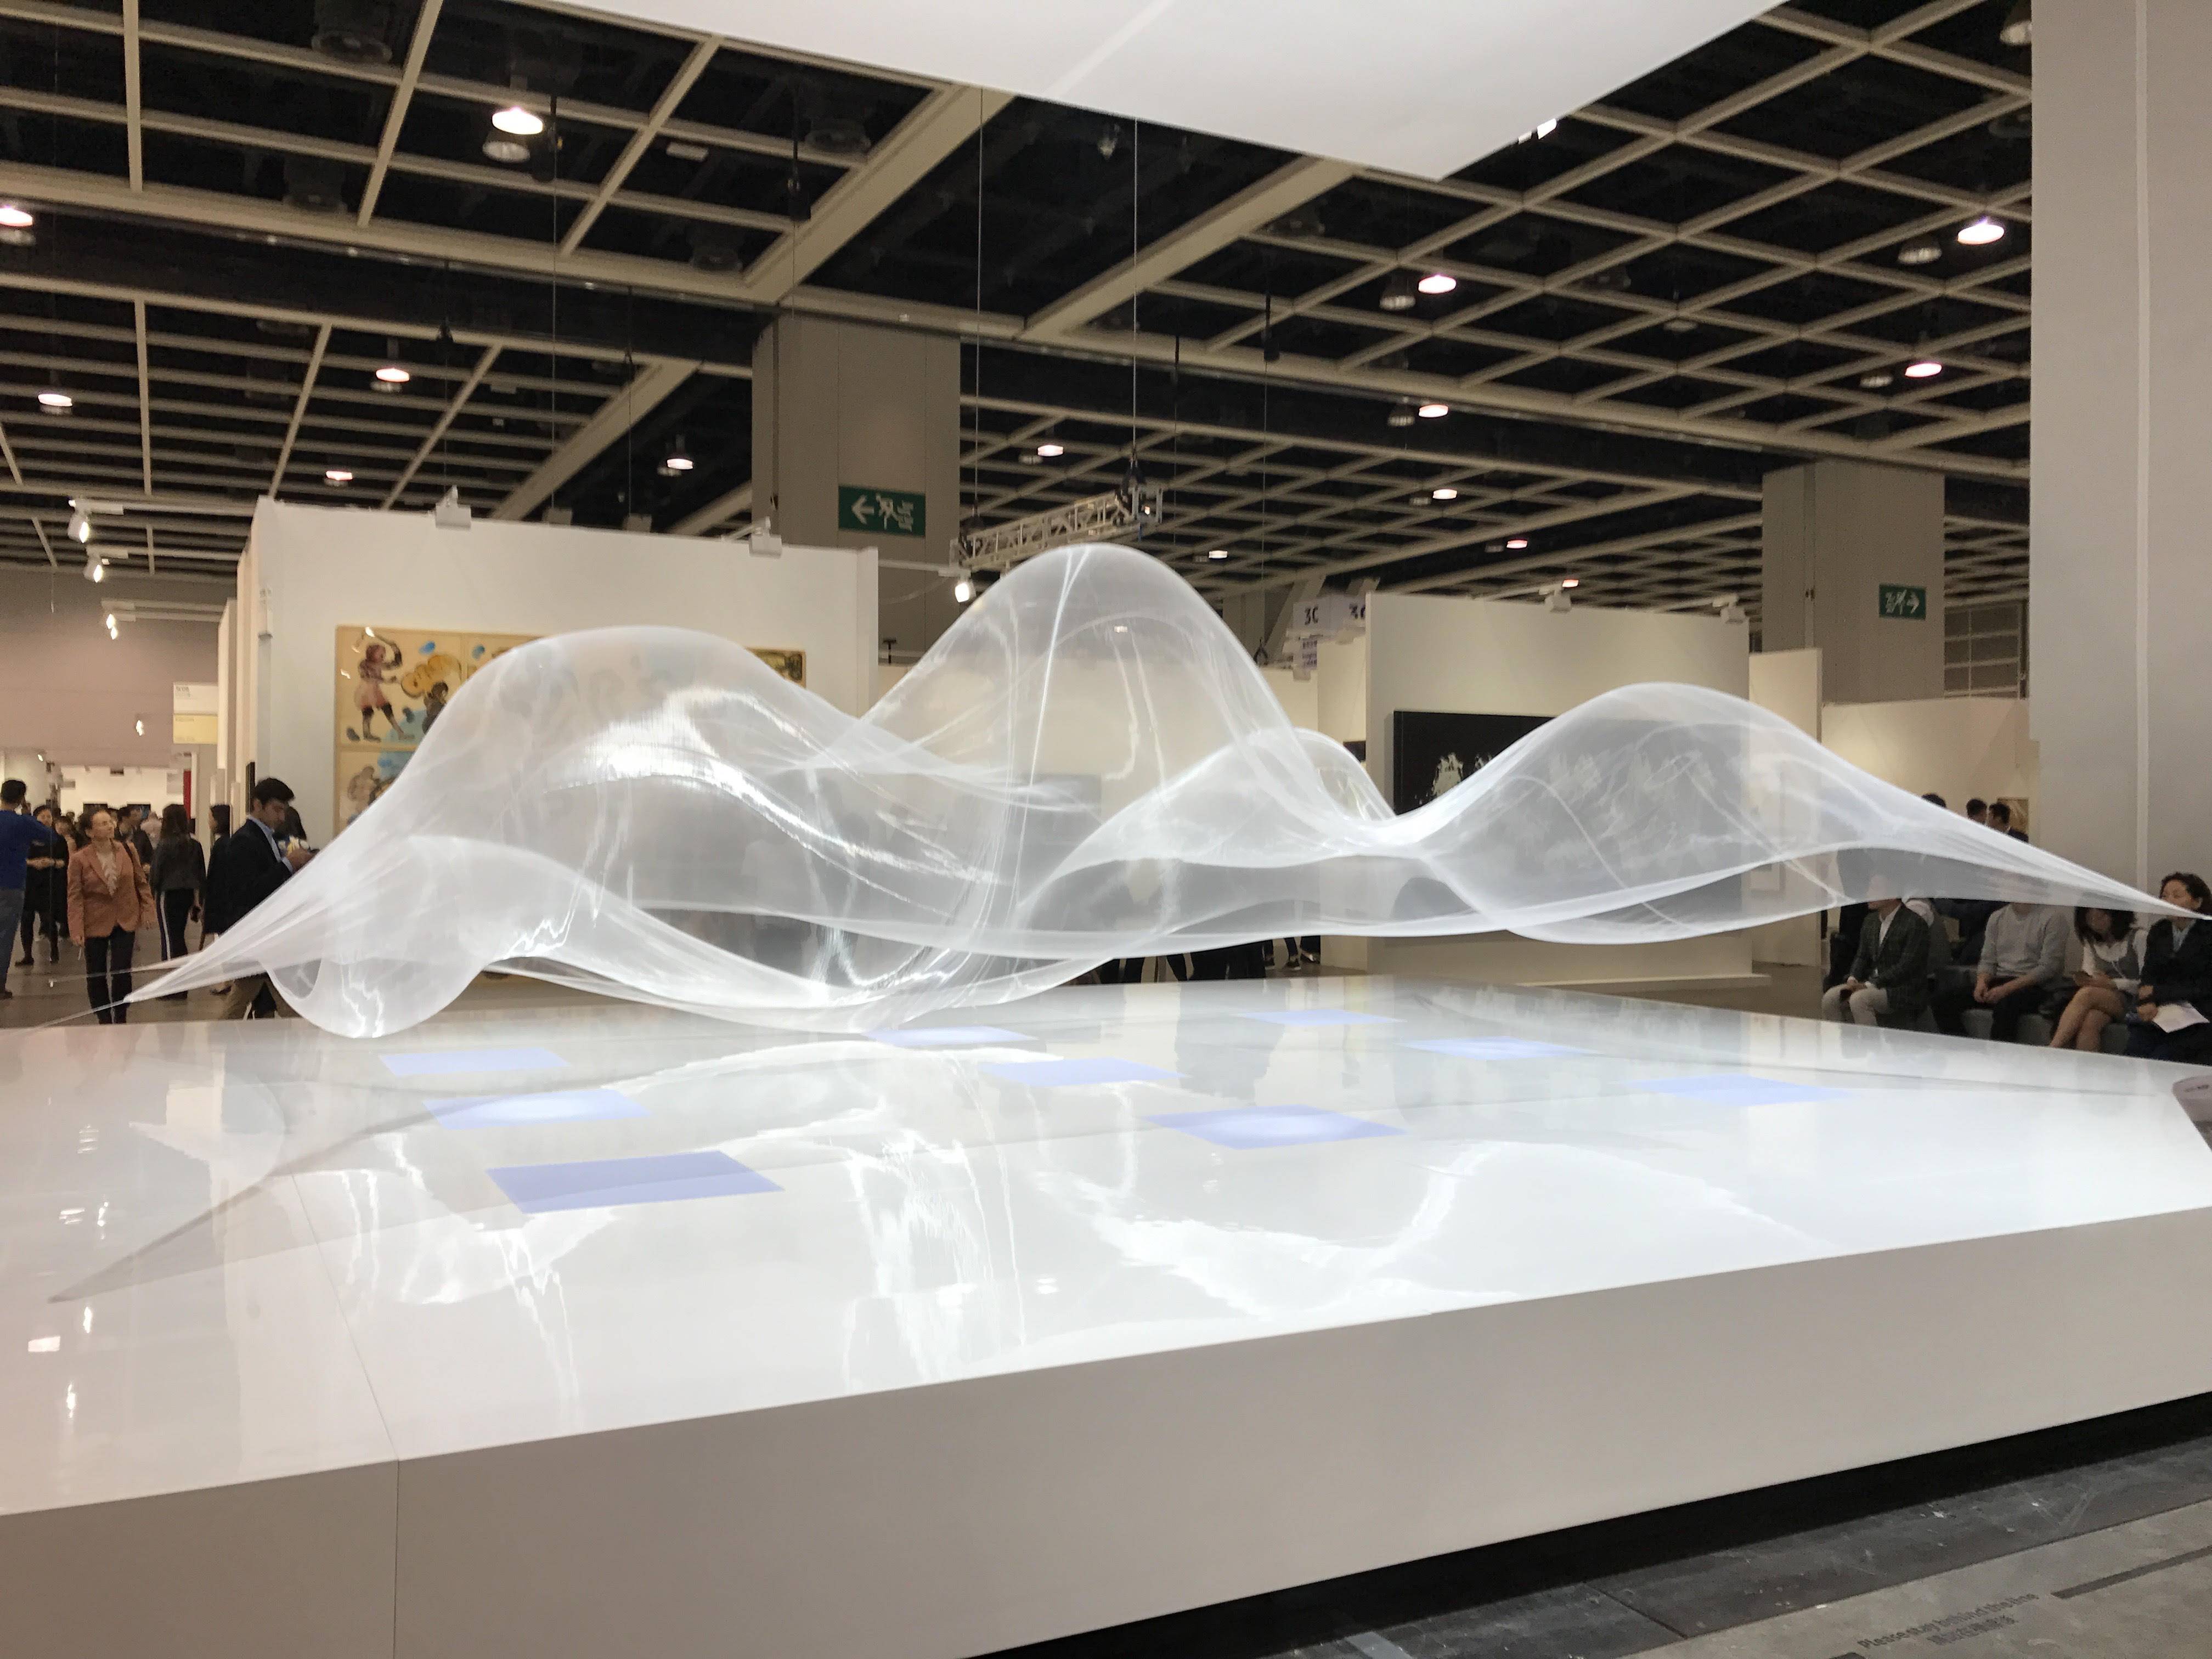 日本藝術家大卷伸嗣(Shinji Ohmaki)空氣動態雕塑